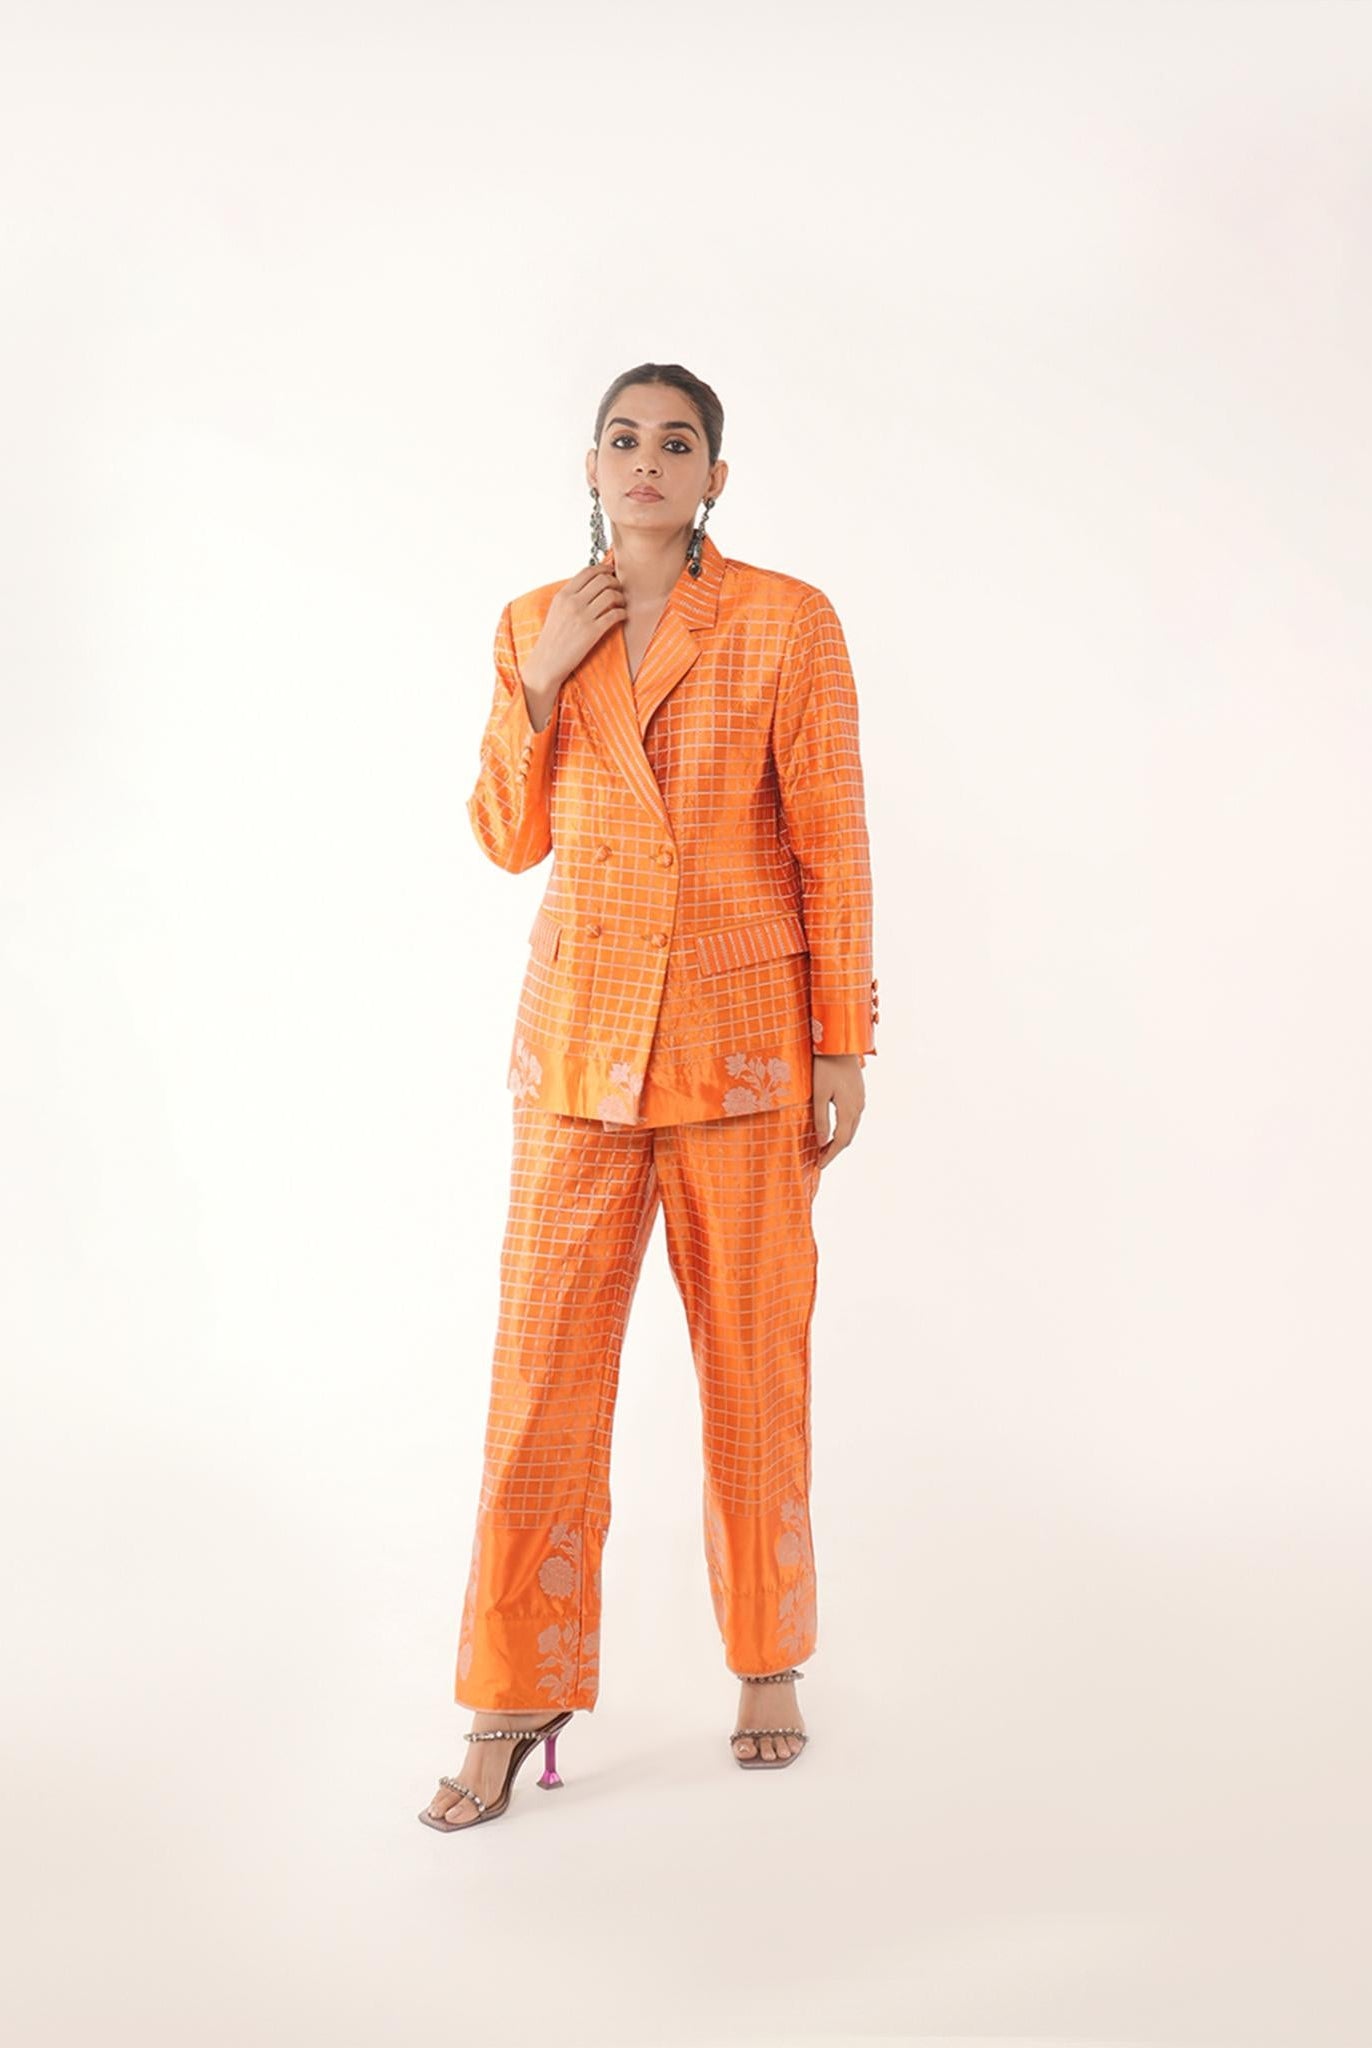 Ruth Pant Suit in Orange - CiceroniCo-ord SetShriya Singhi